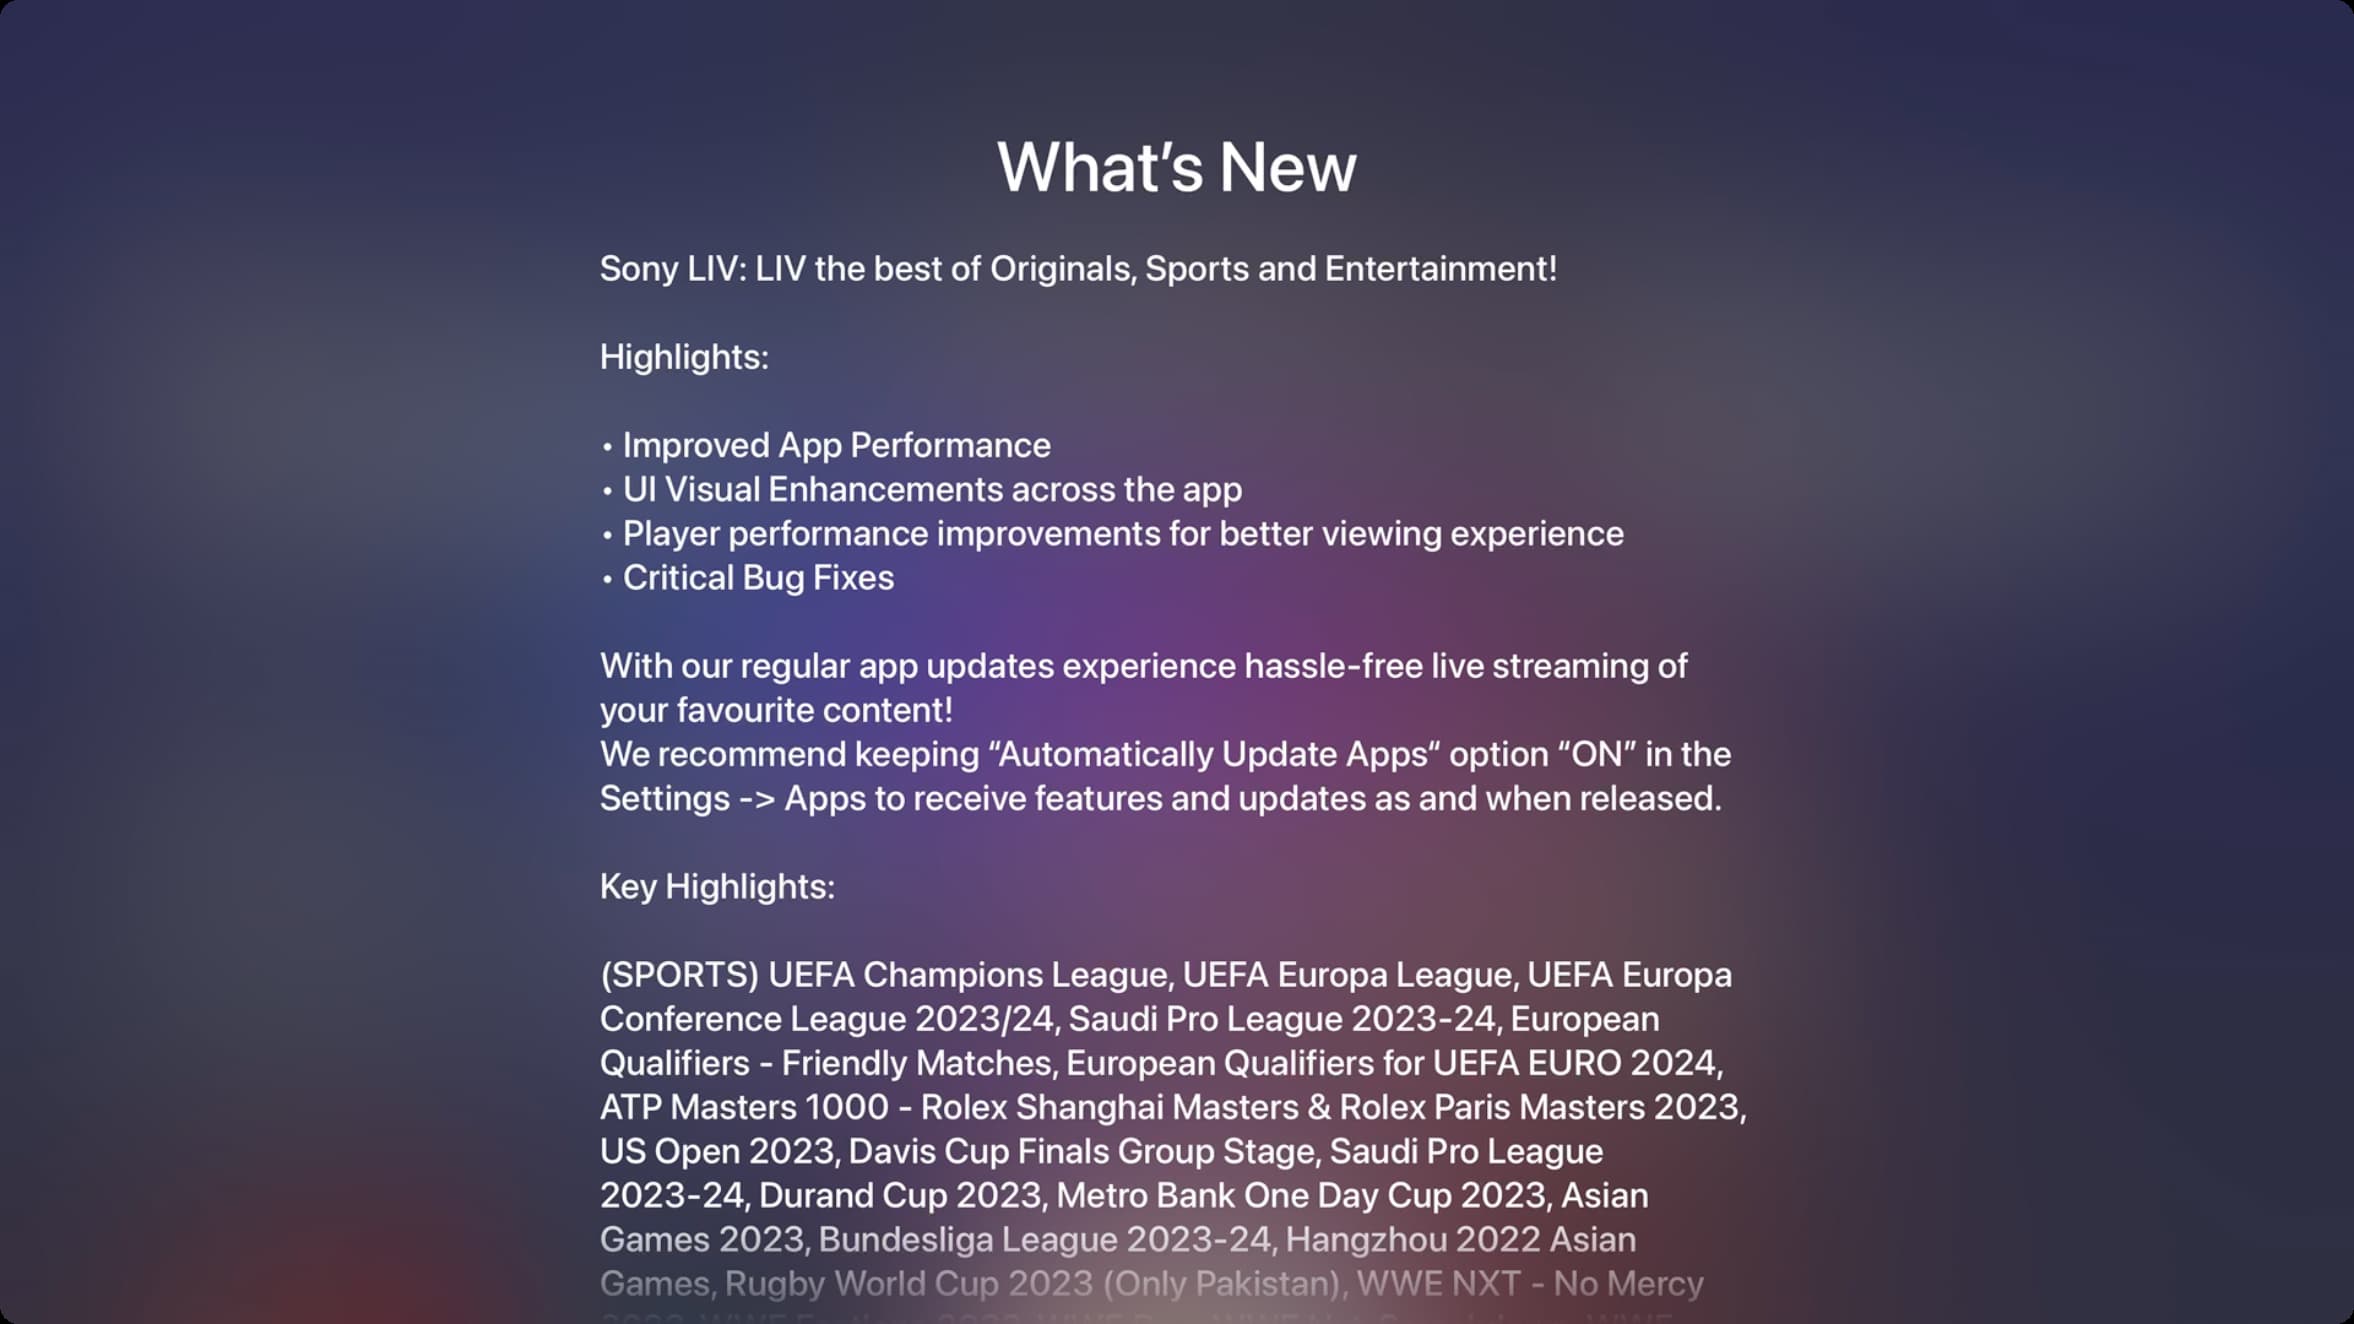 Apple TV app update changelog on full screen